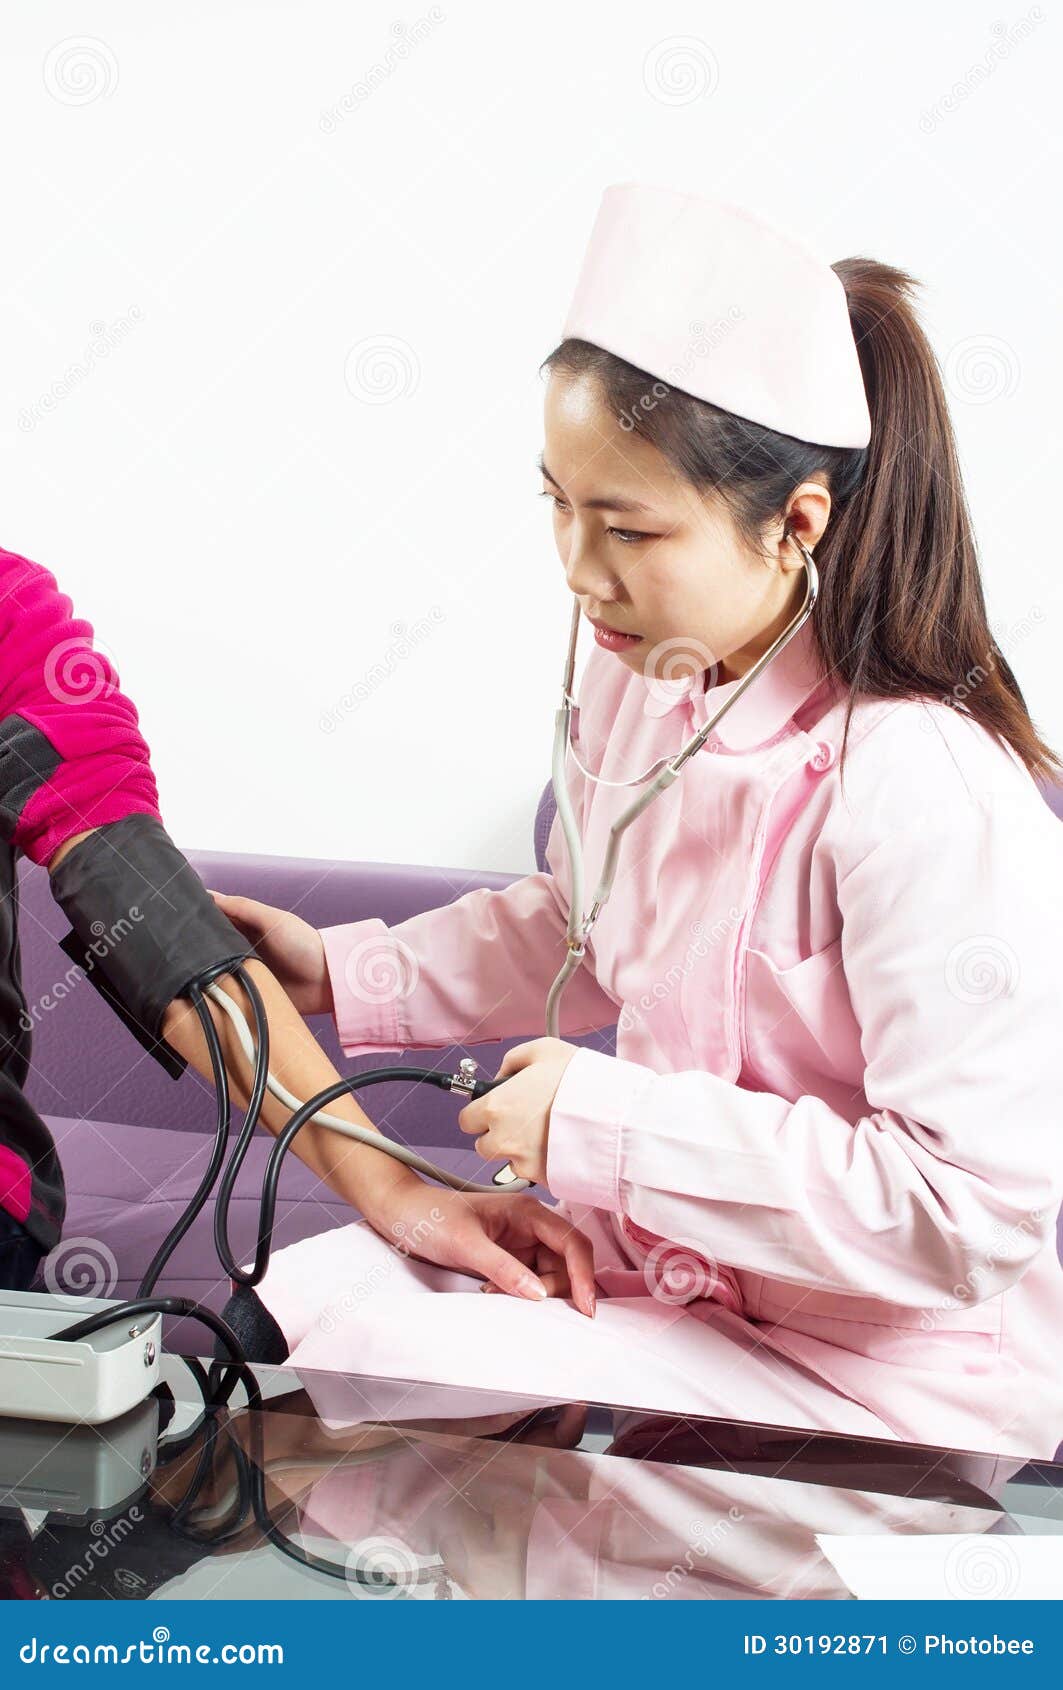 检查耐心` s血压的护士的中央部位 库存图片. 图片 包括有 化学家, 患者, 医生, 女孩, 考试, 男性 - 89046855